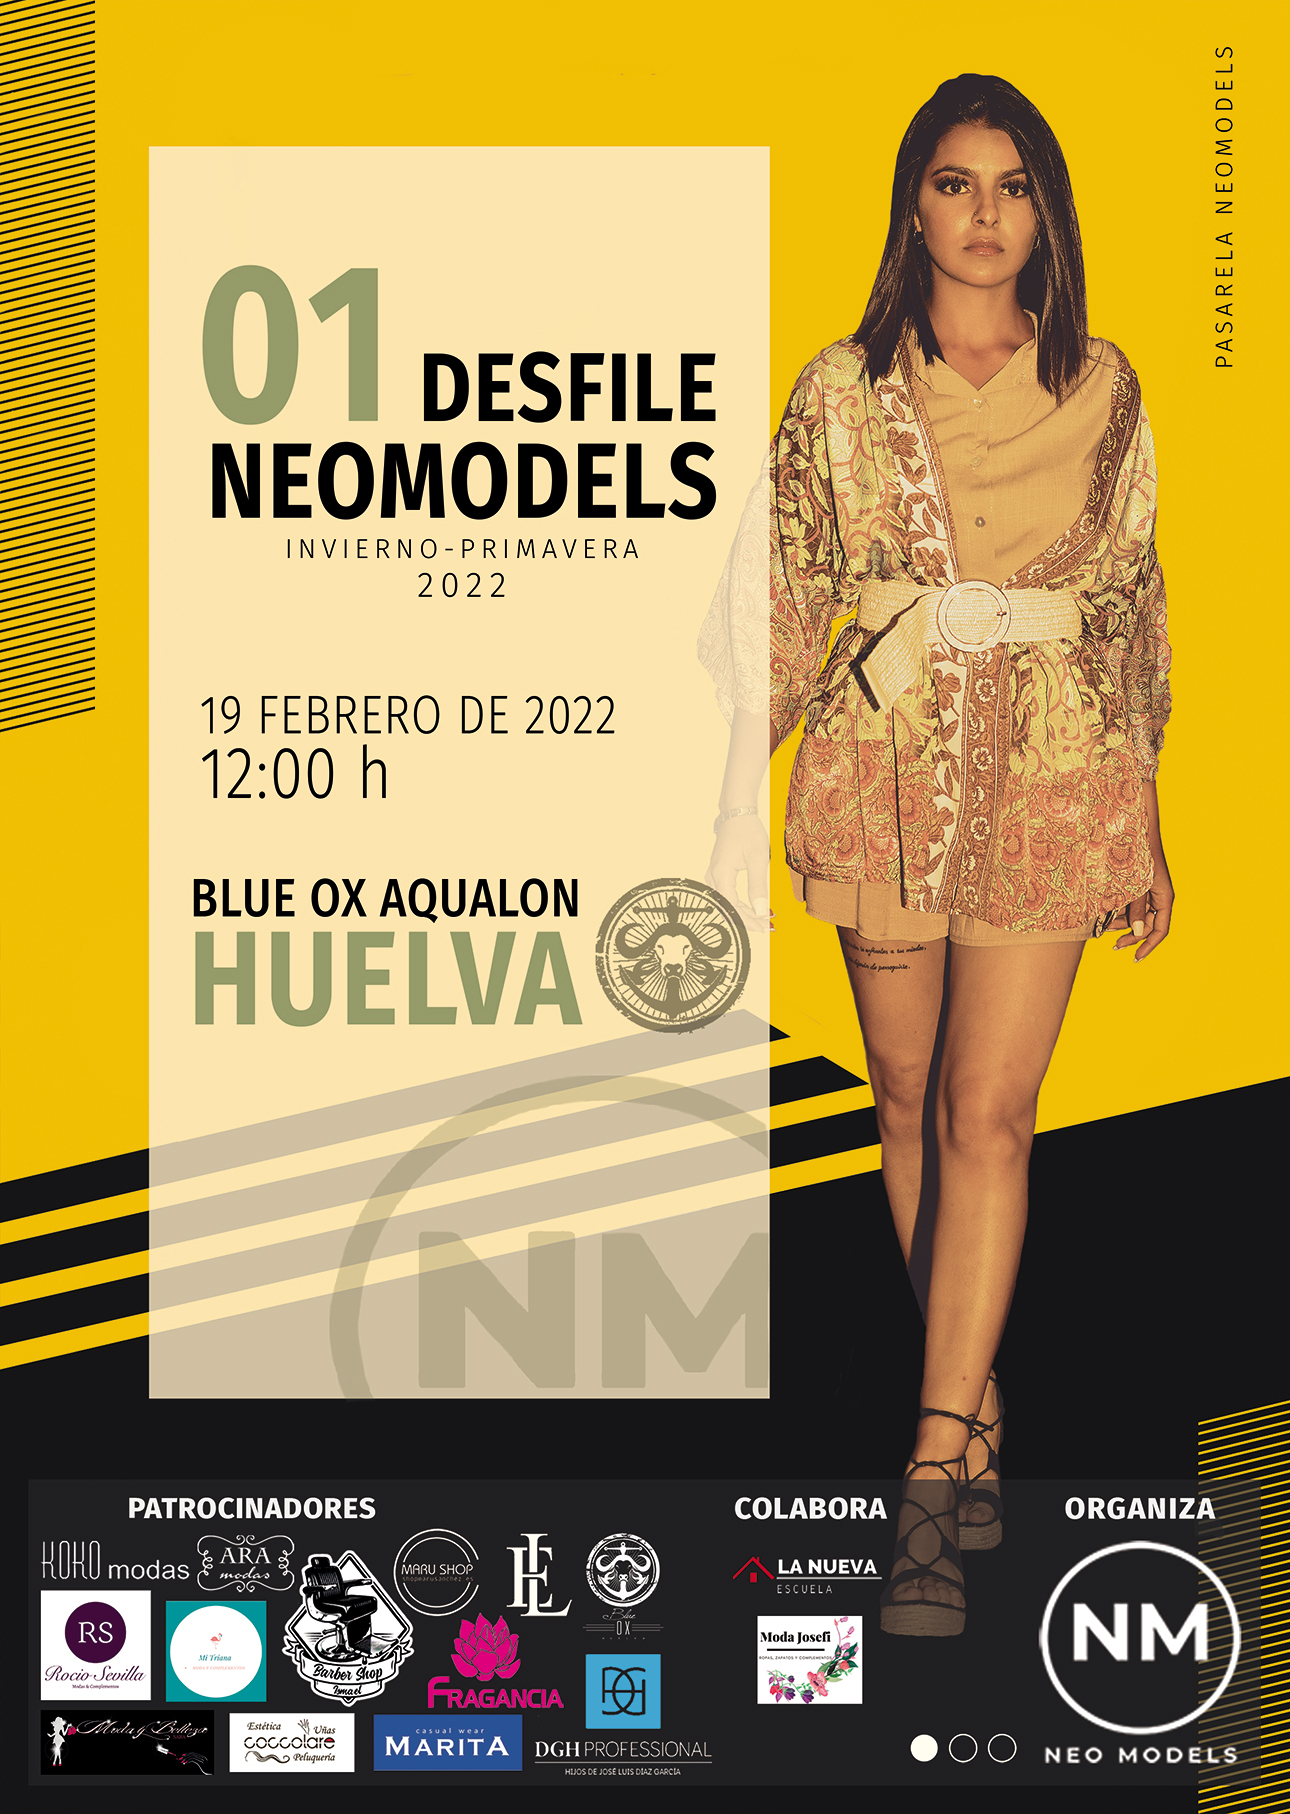 Desfile “NeoModels” en Huelva